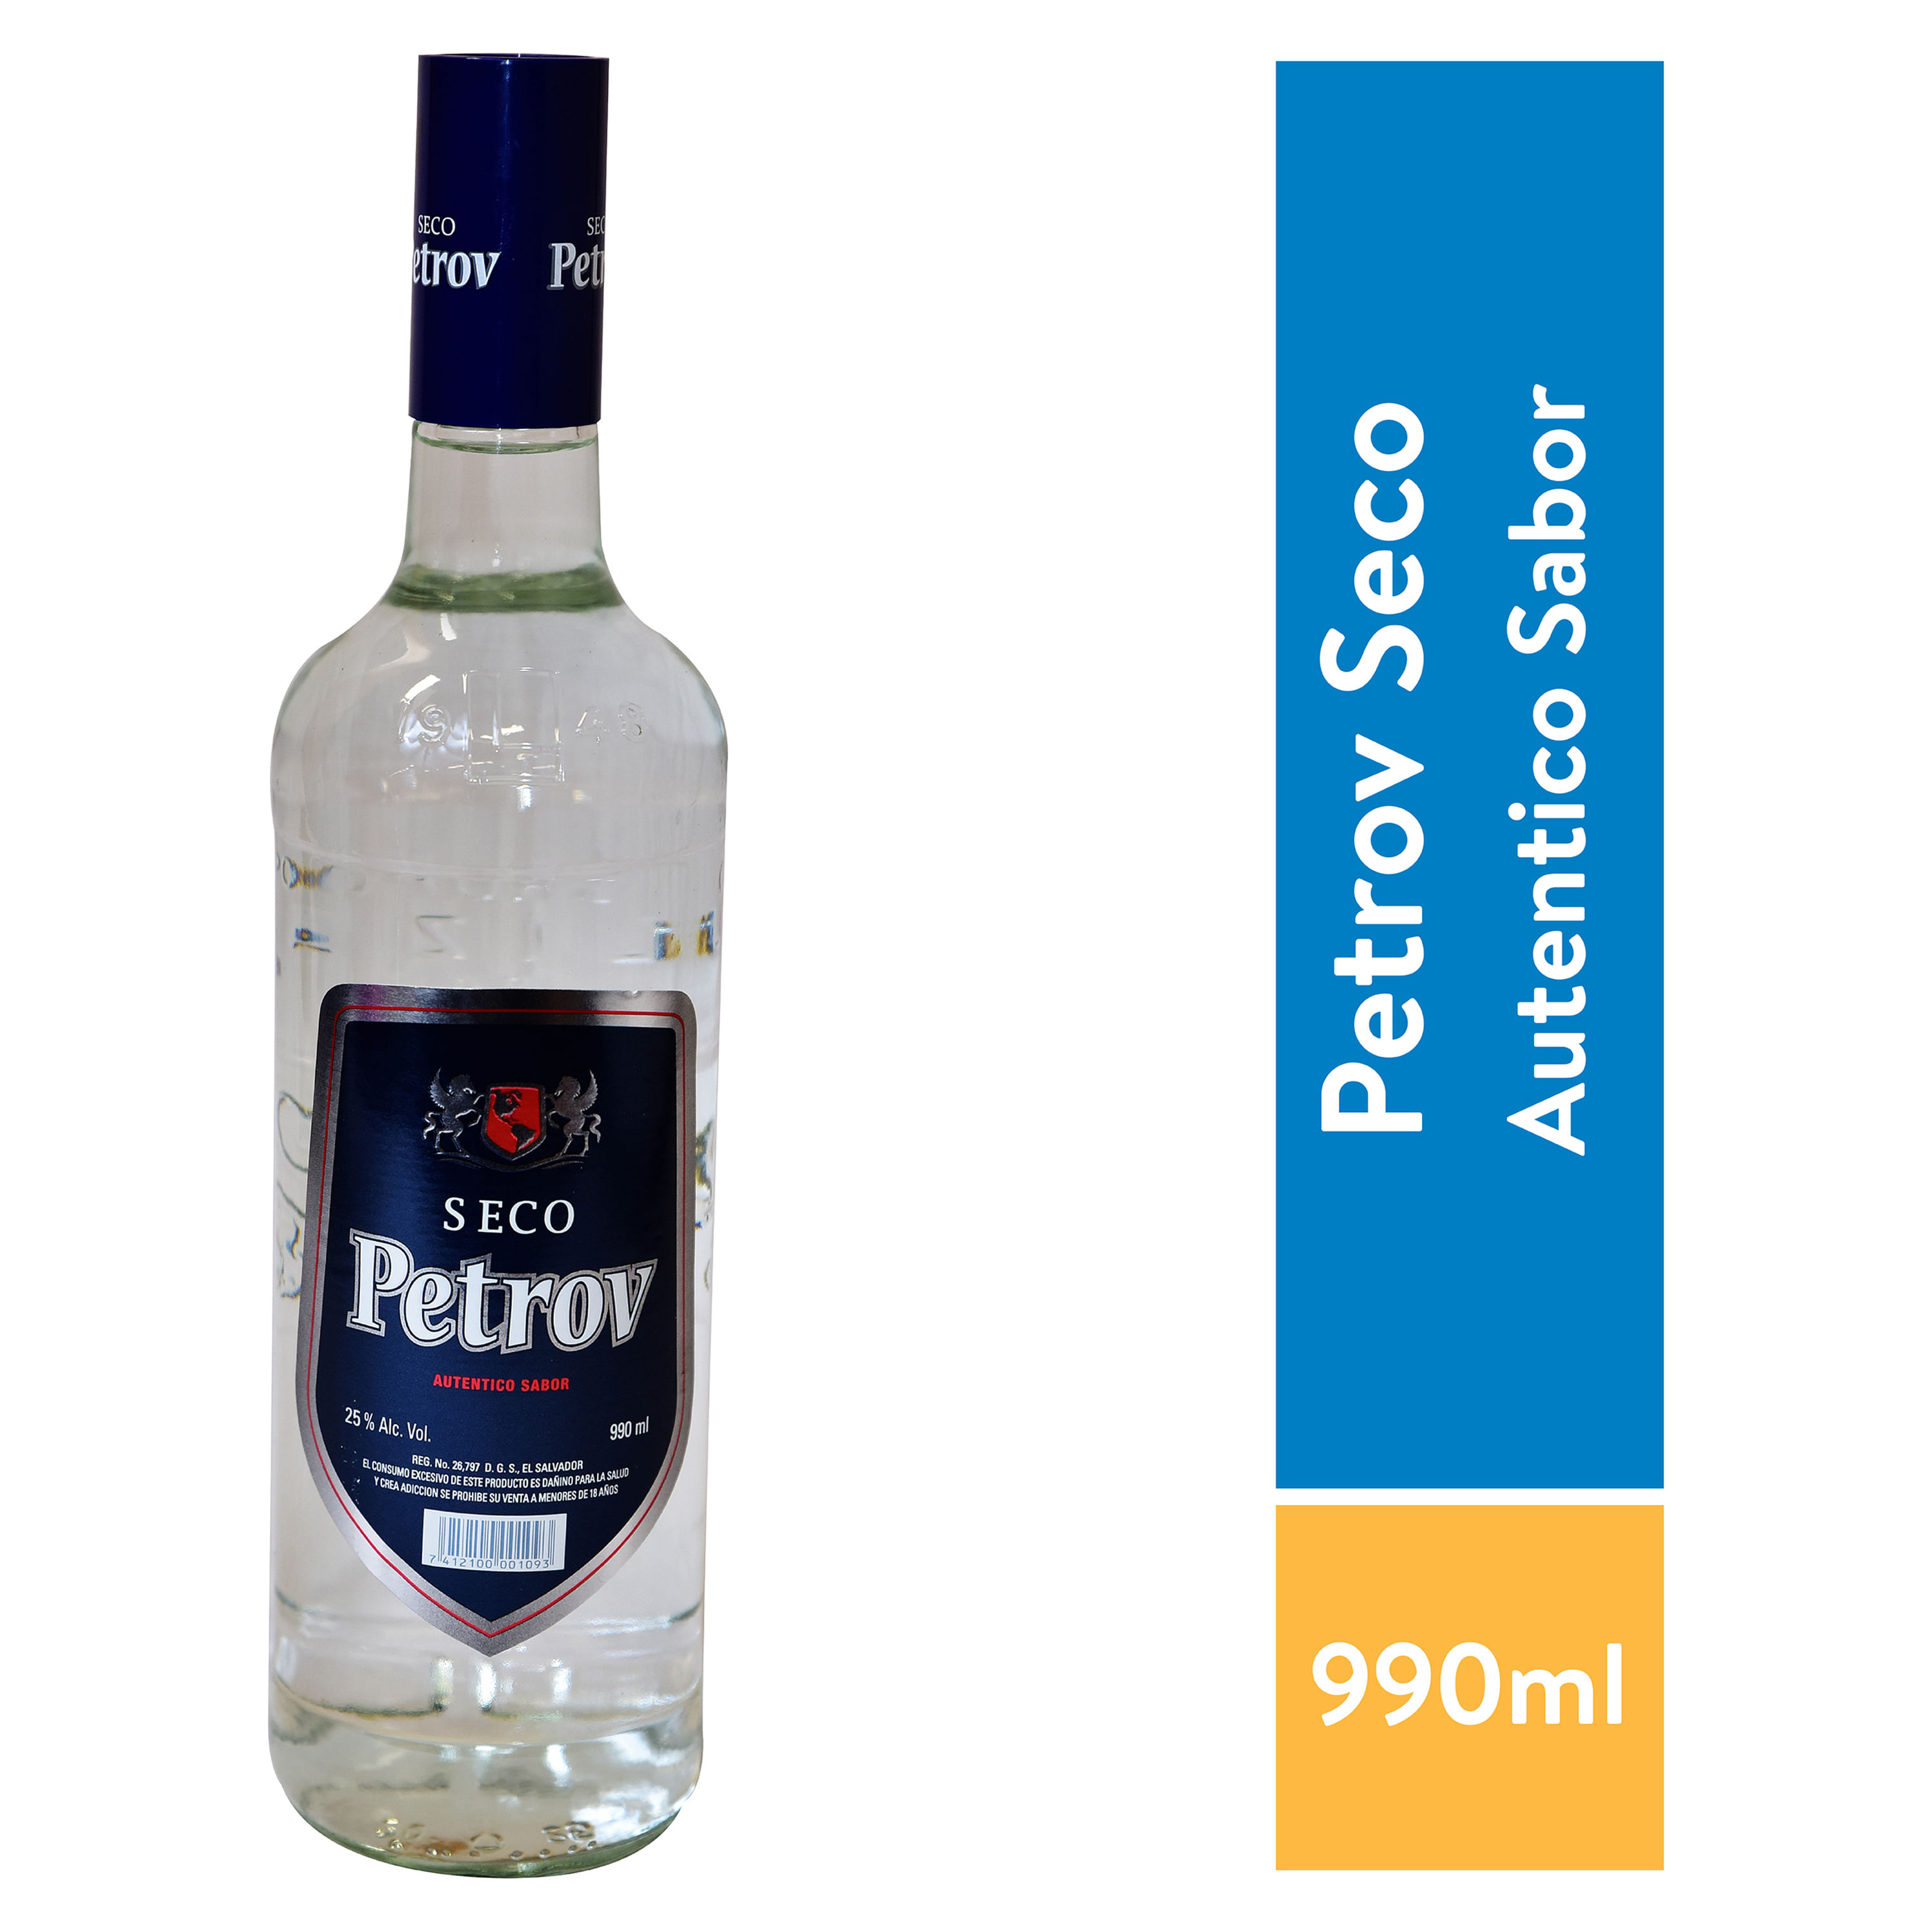 Vodka-Petrov-Seco-990-Ml-1-12627